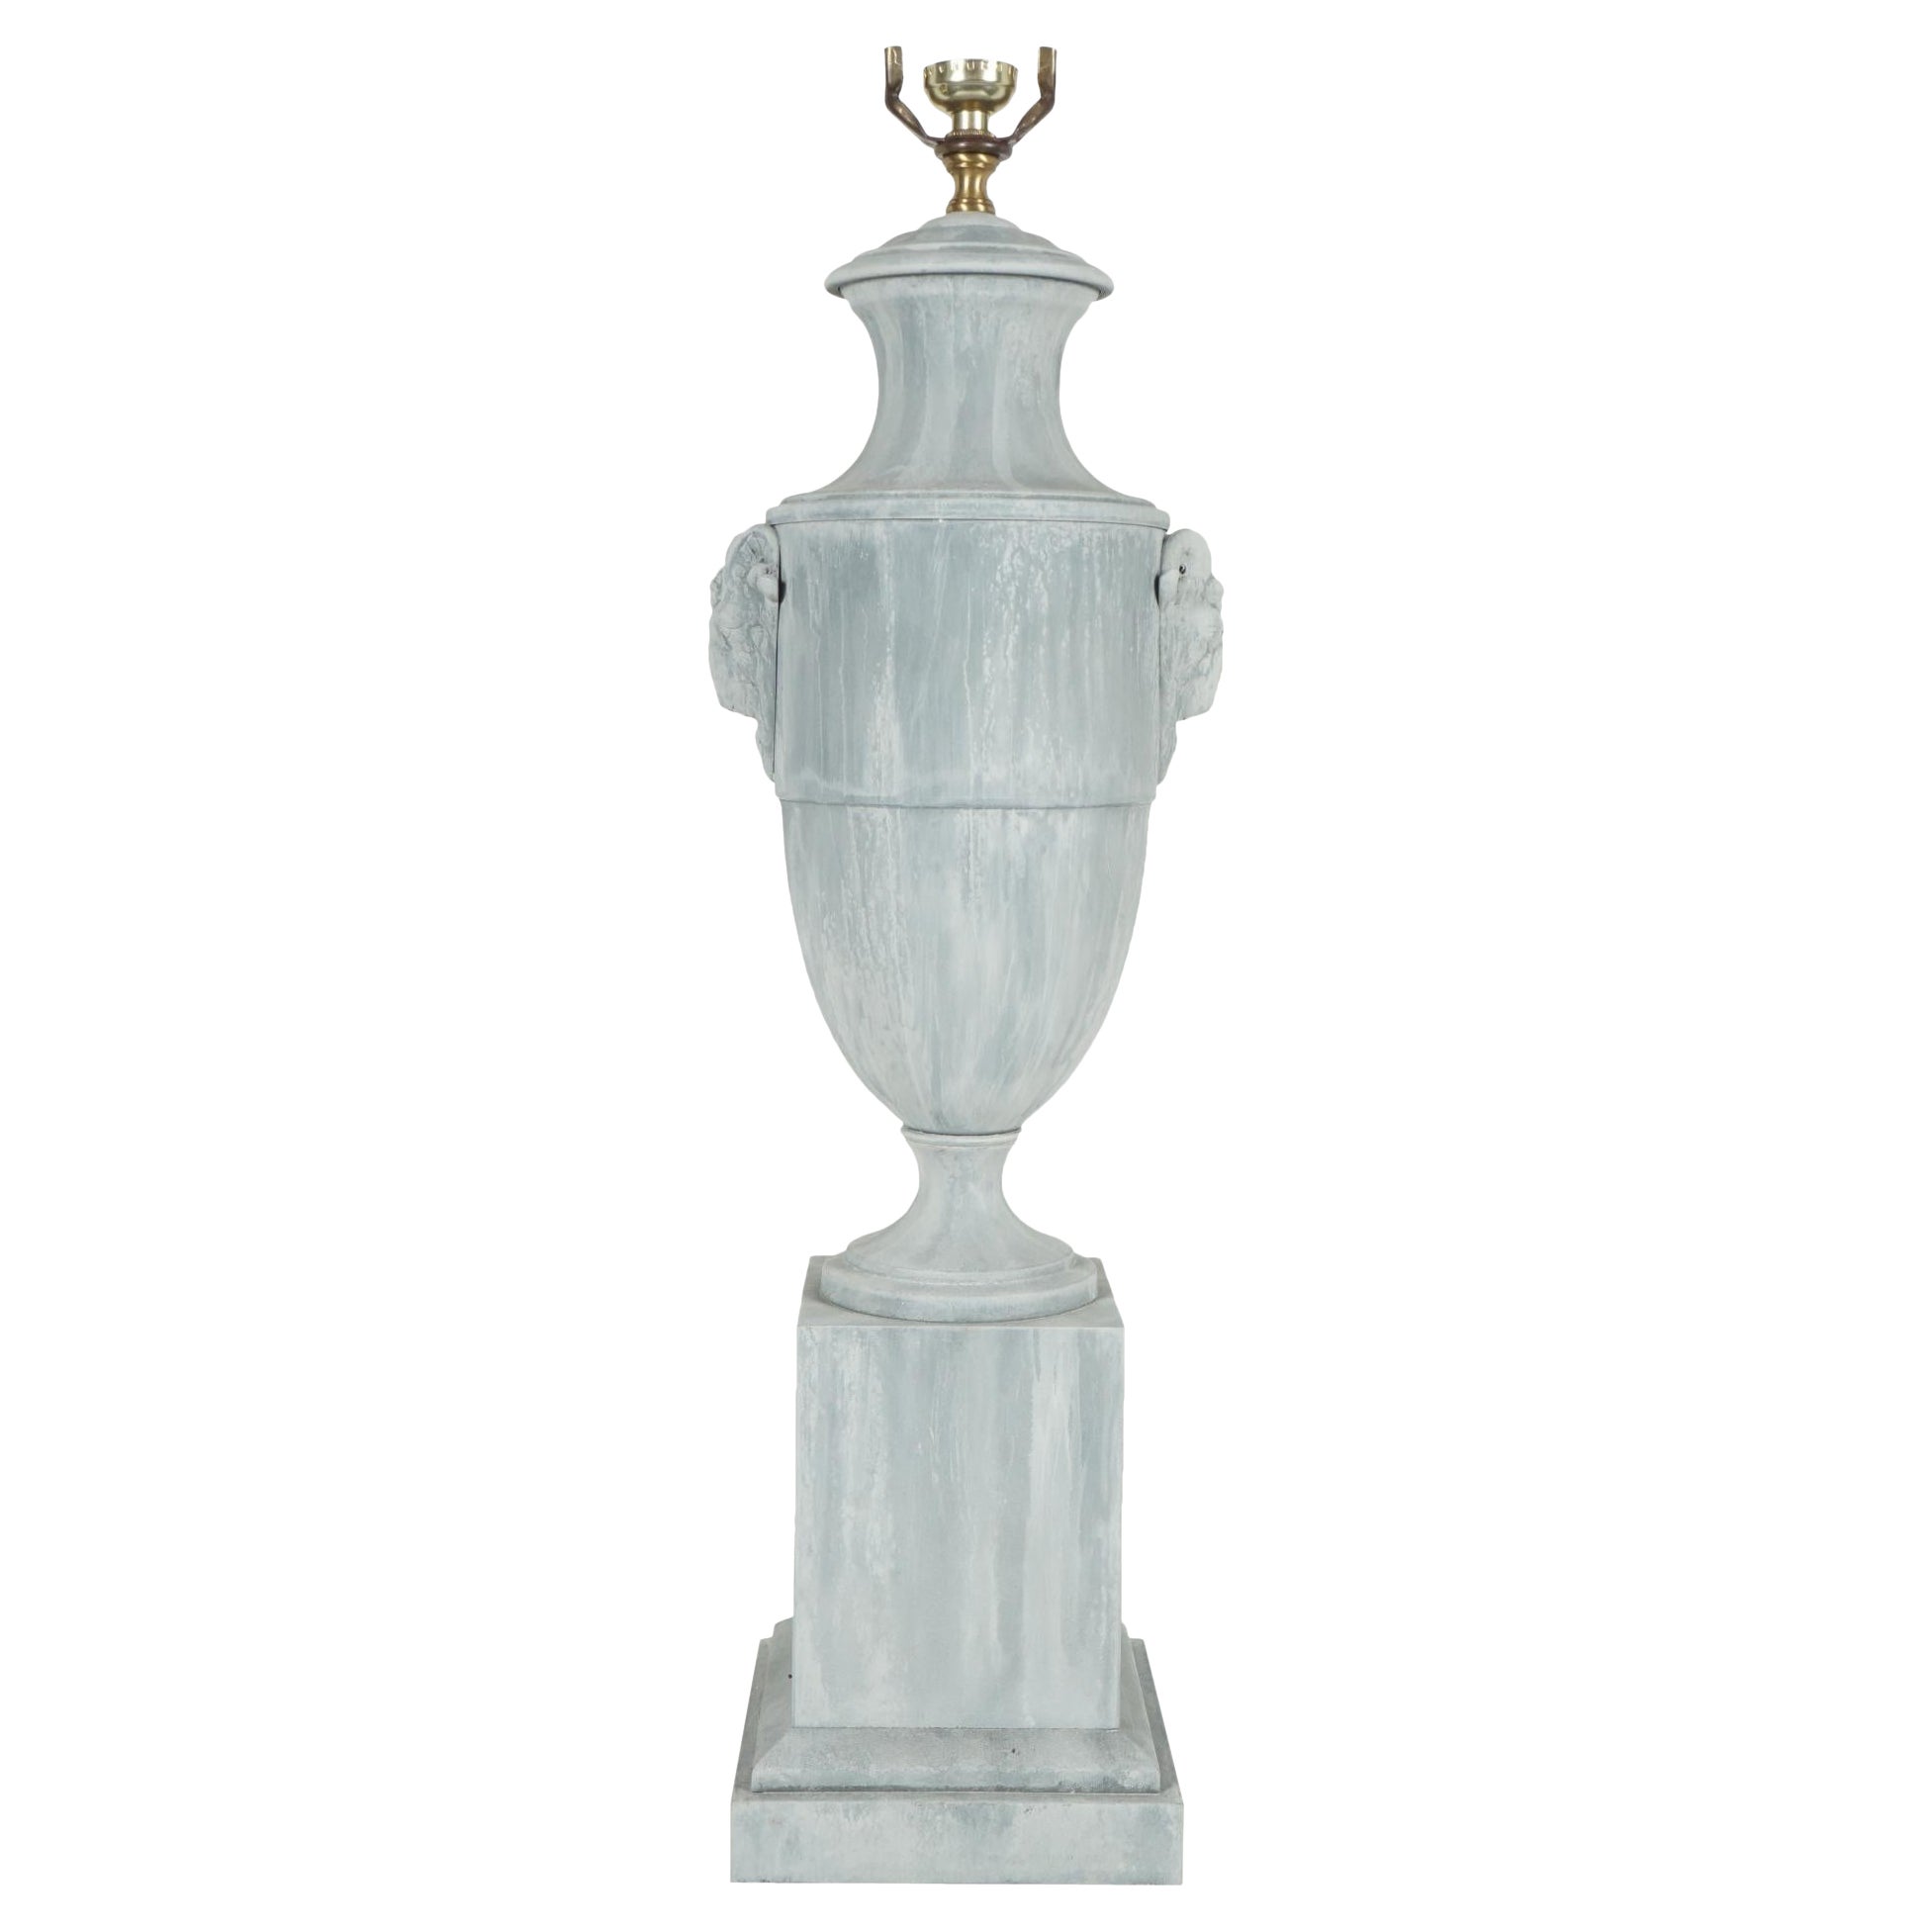 Lampe urne en zinc du début du 20ème siècle provenant de la succession de Bunny Mellon.